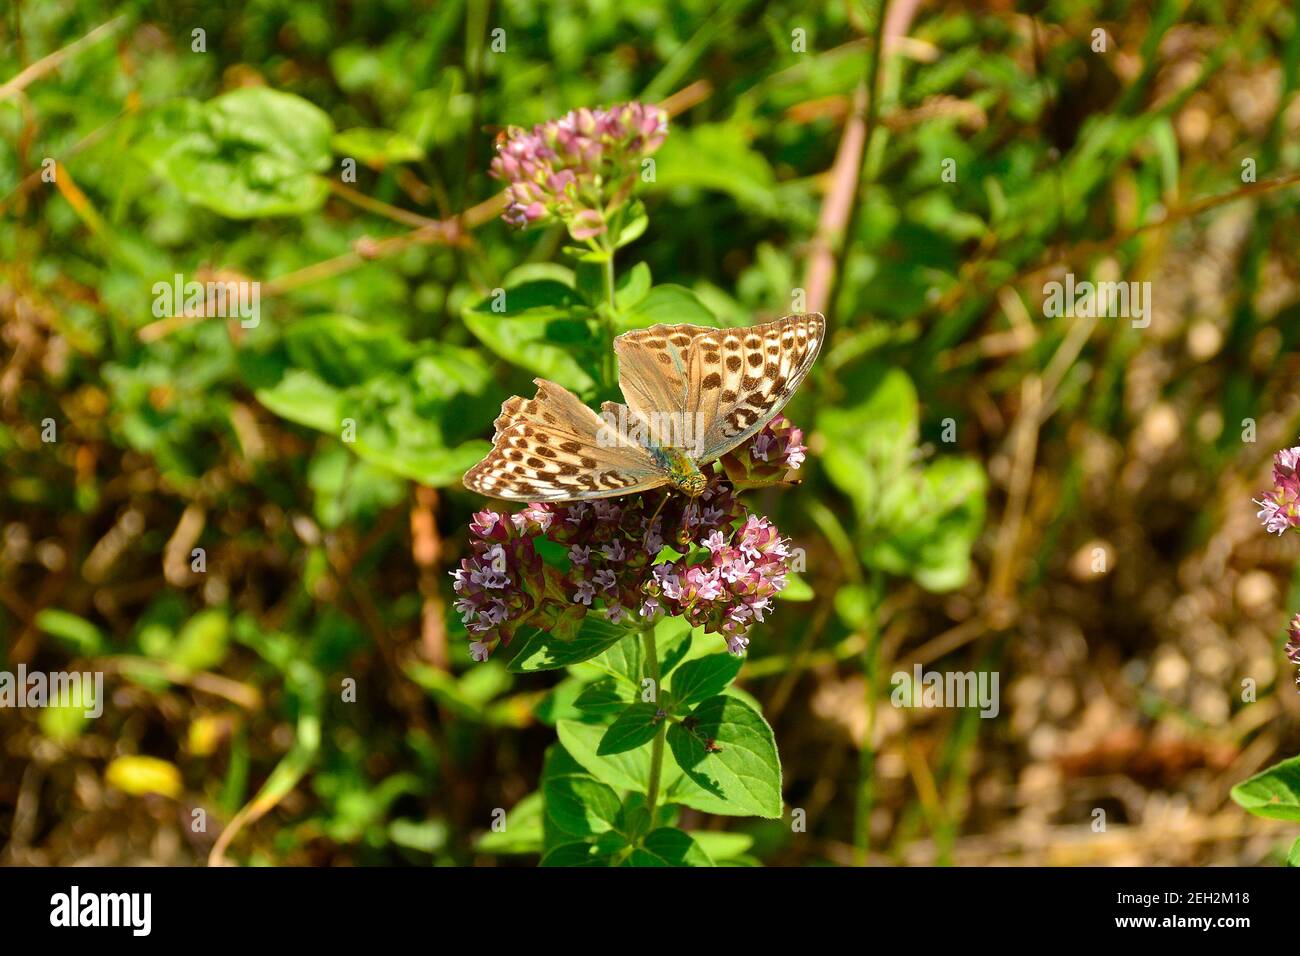 Une femelle papillon fritillaire lavé à l'argent dans le nord-est de l'Italie. Ils sont sur les fleurs de l'herbe perreniale Asclepias syriaca, AKA lait commun Weed Banque D'Images